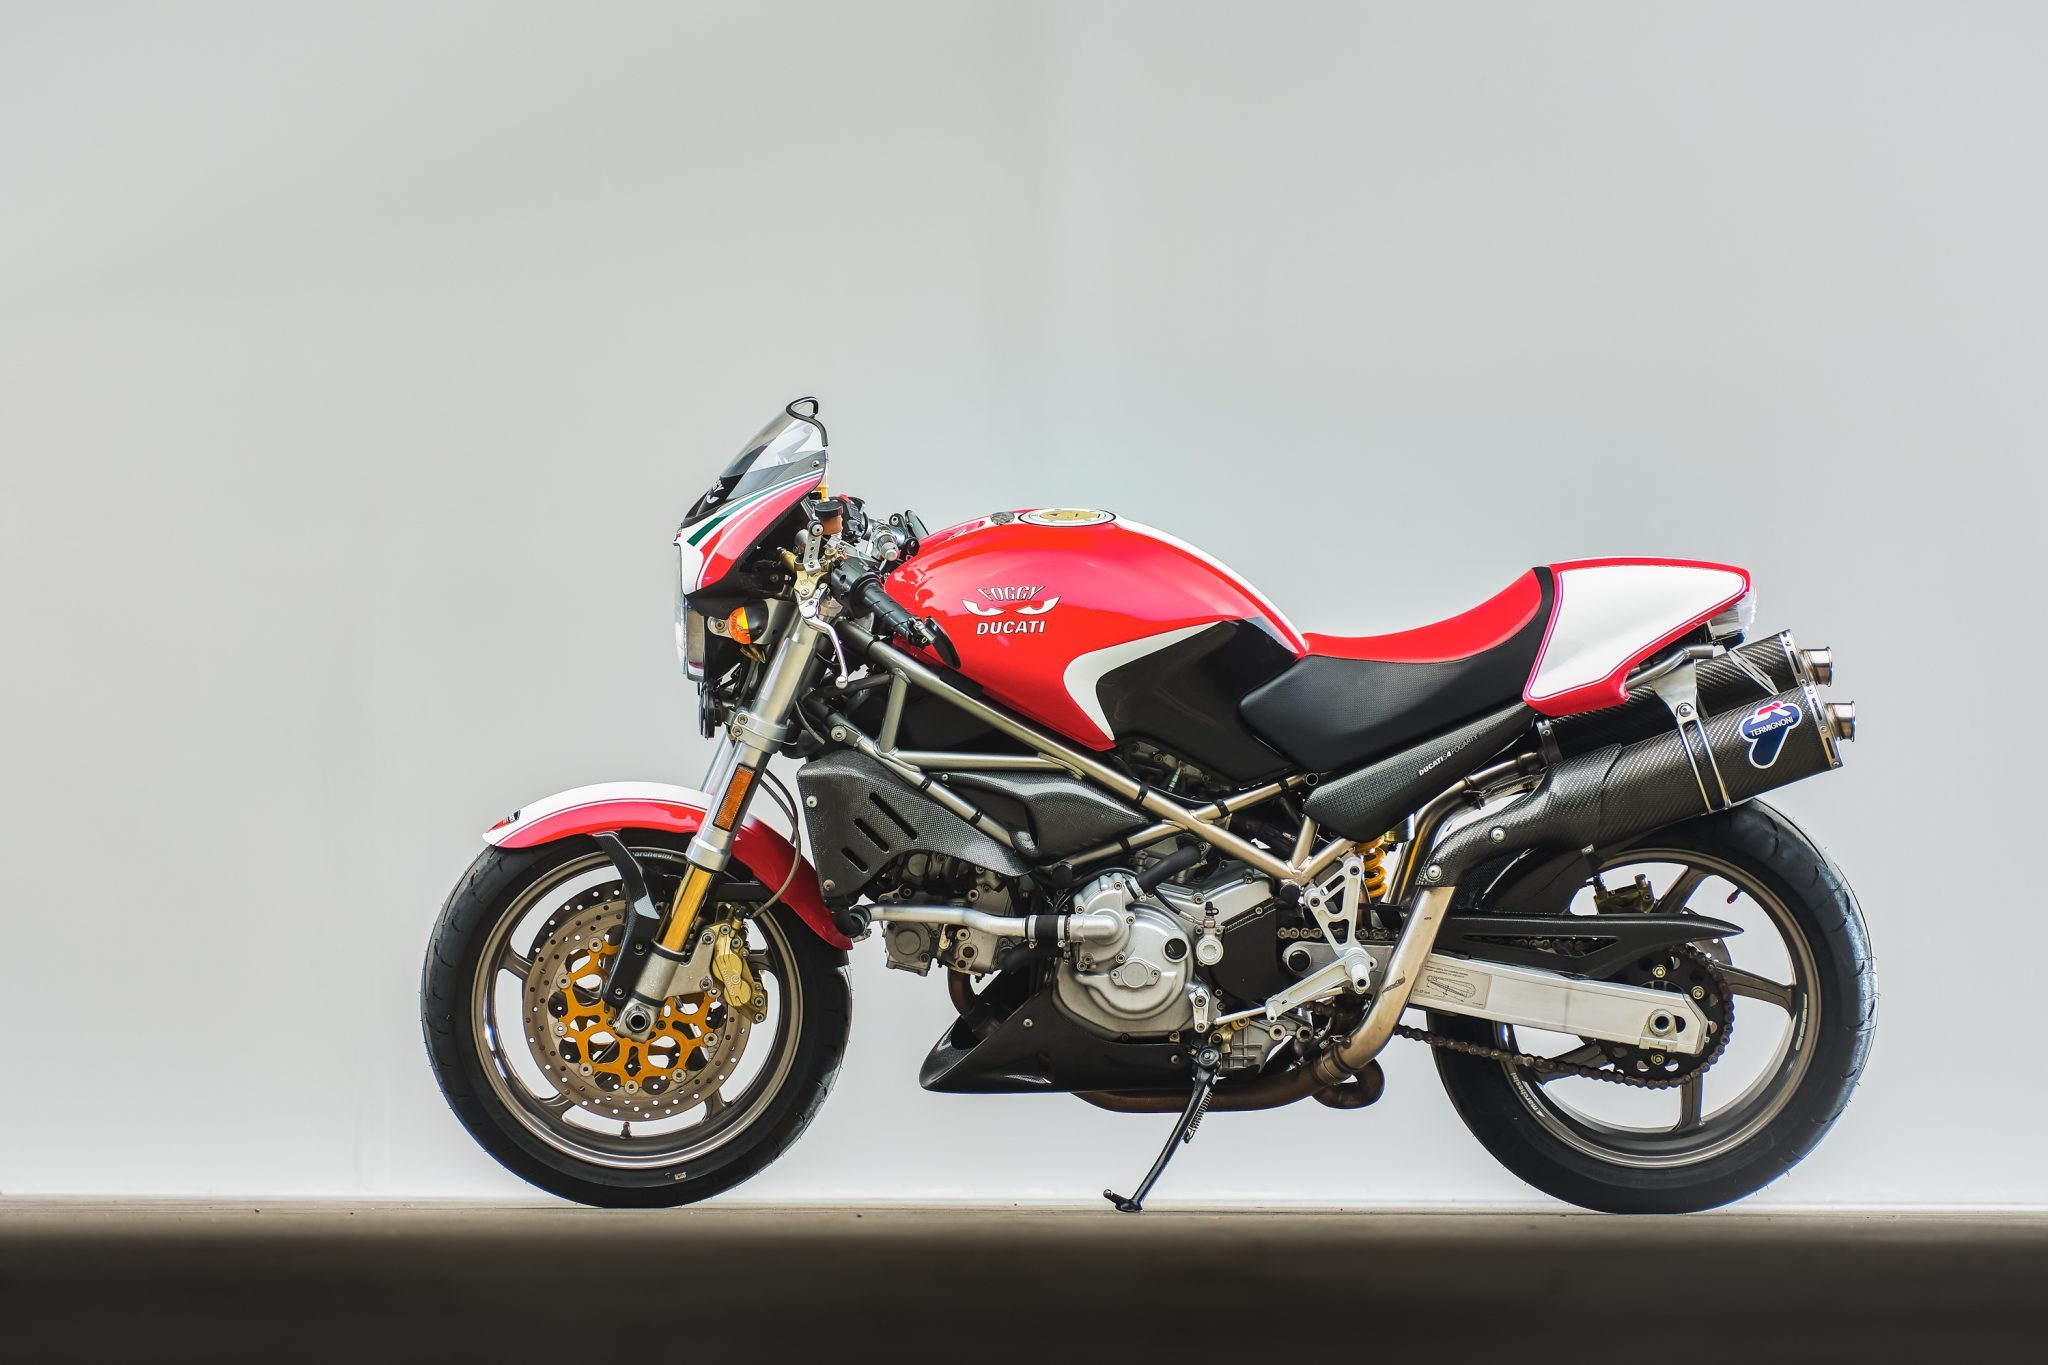 Скачать обои Ducati Monster S4 Фогарти Издание на телефон бесплатно